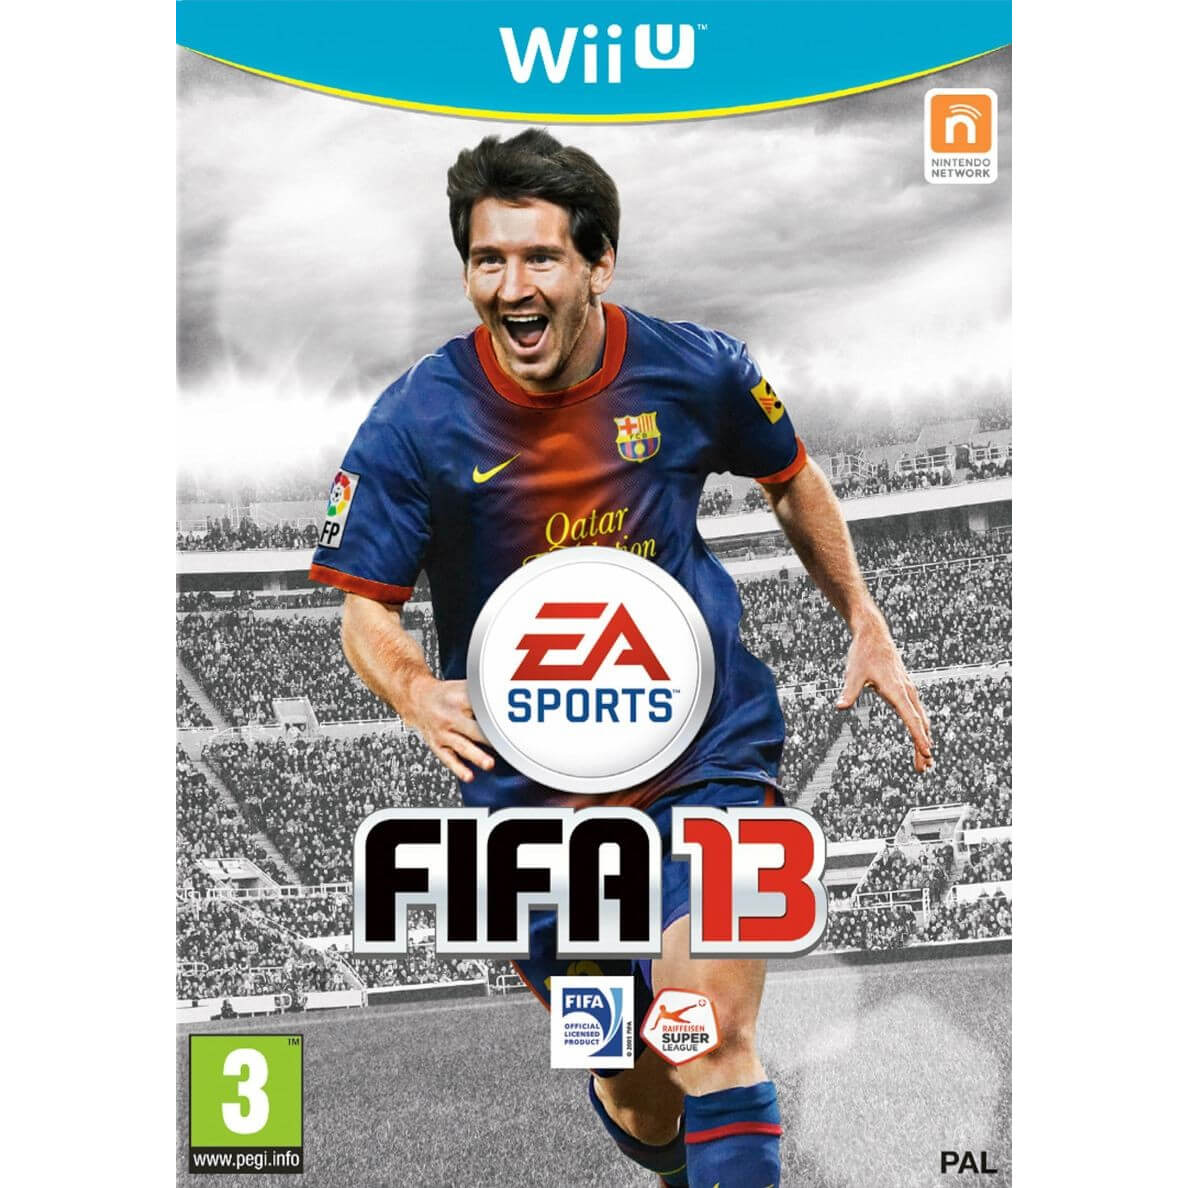  Joc Wii U FIFA 13 